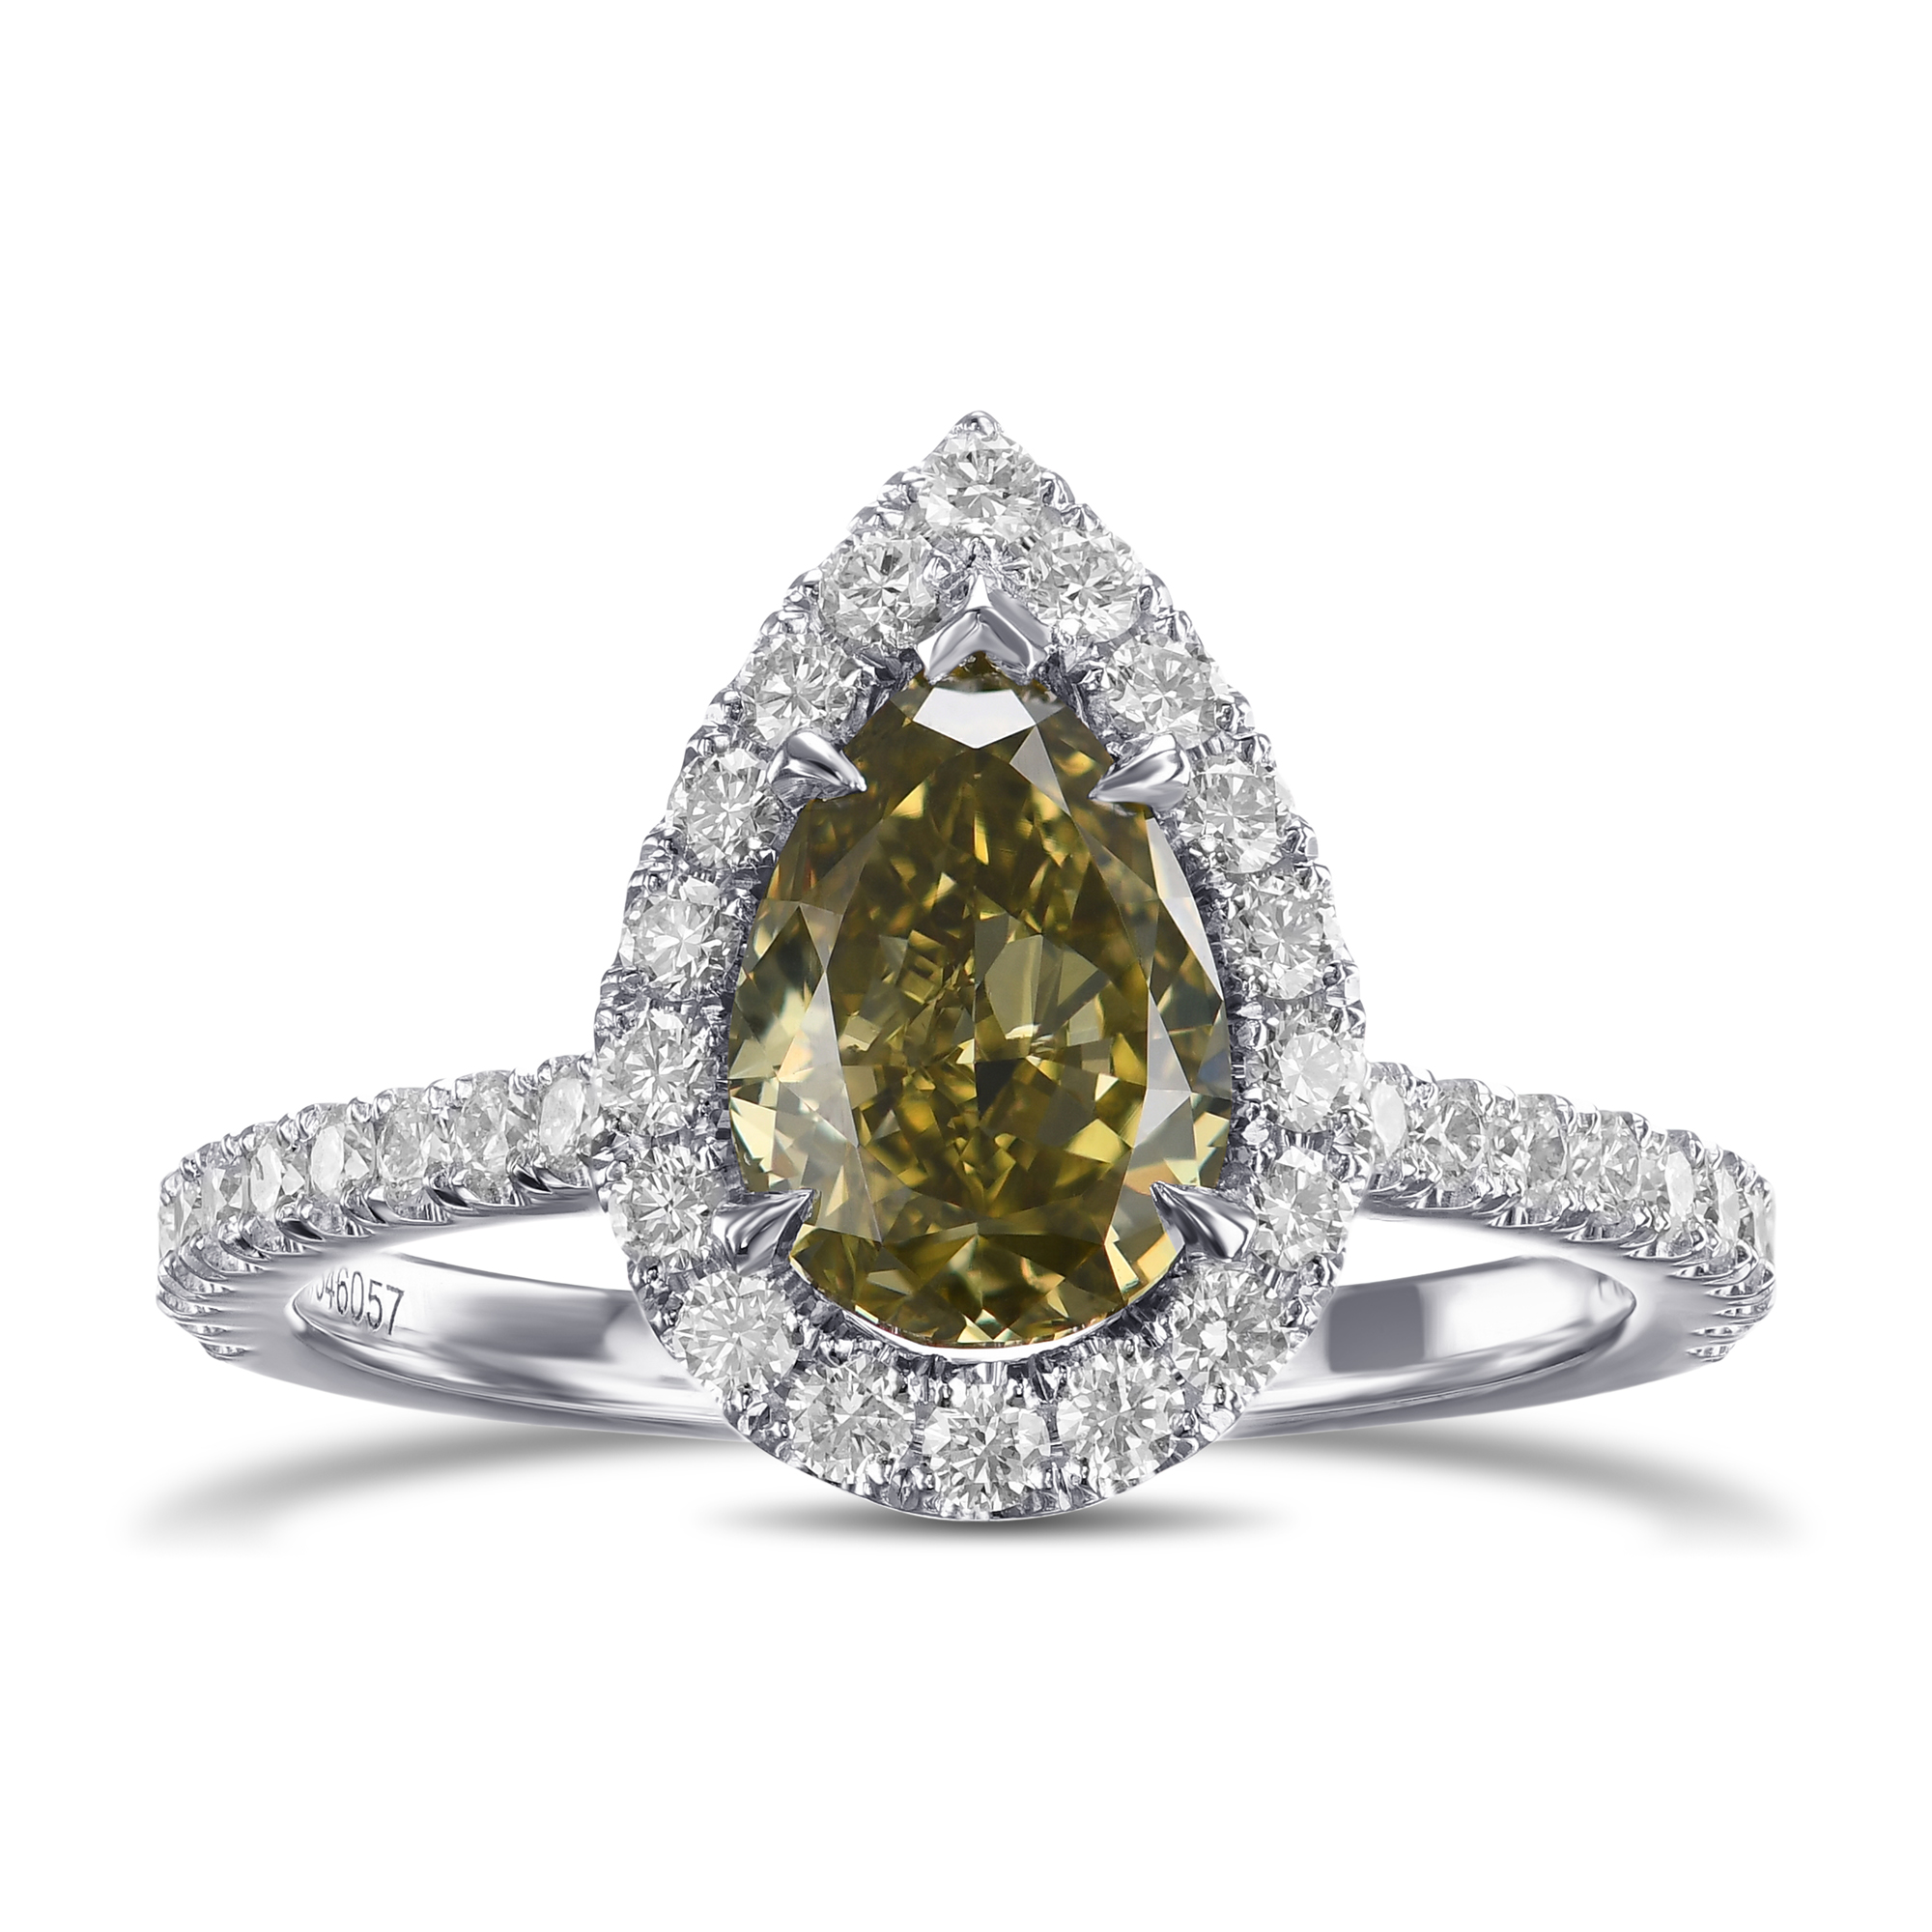 Chameleon Pear Diamond Halo Style Engagement Ring, ARTIKELNUMMER 546057 (1,74 Karat TW)